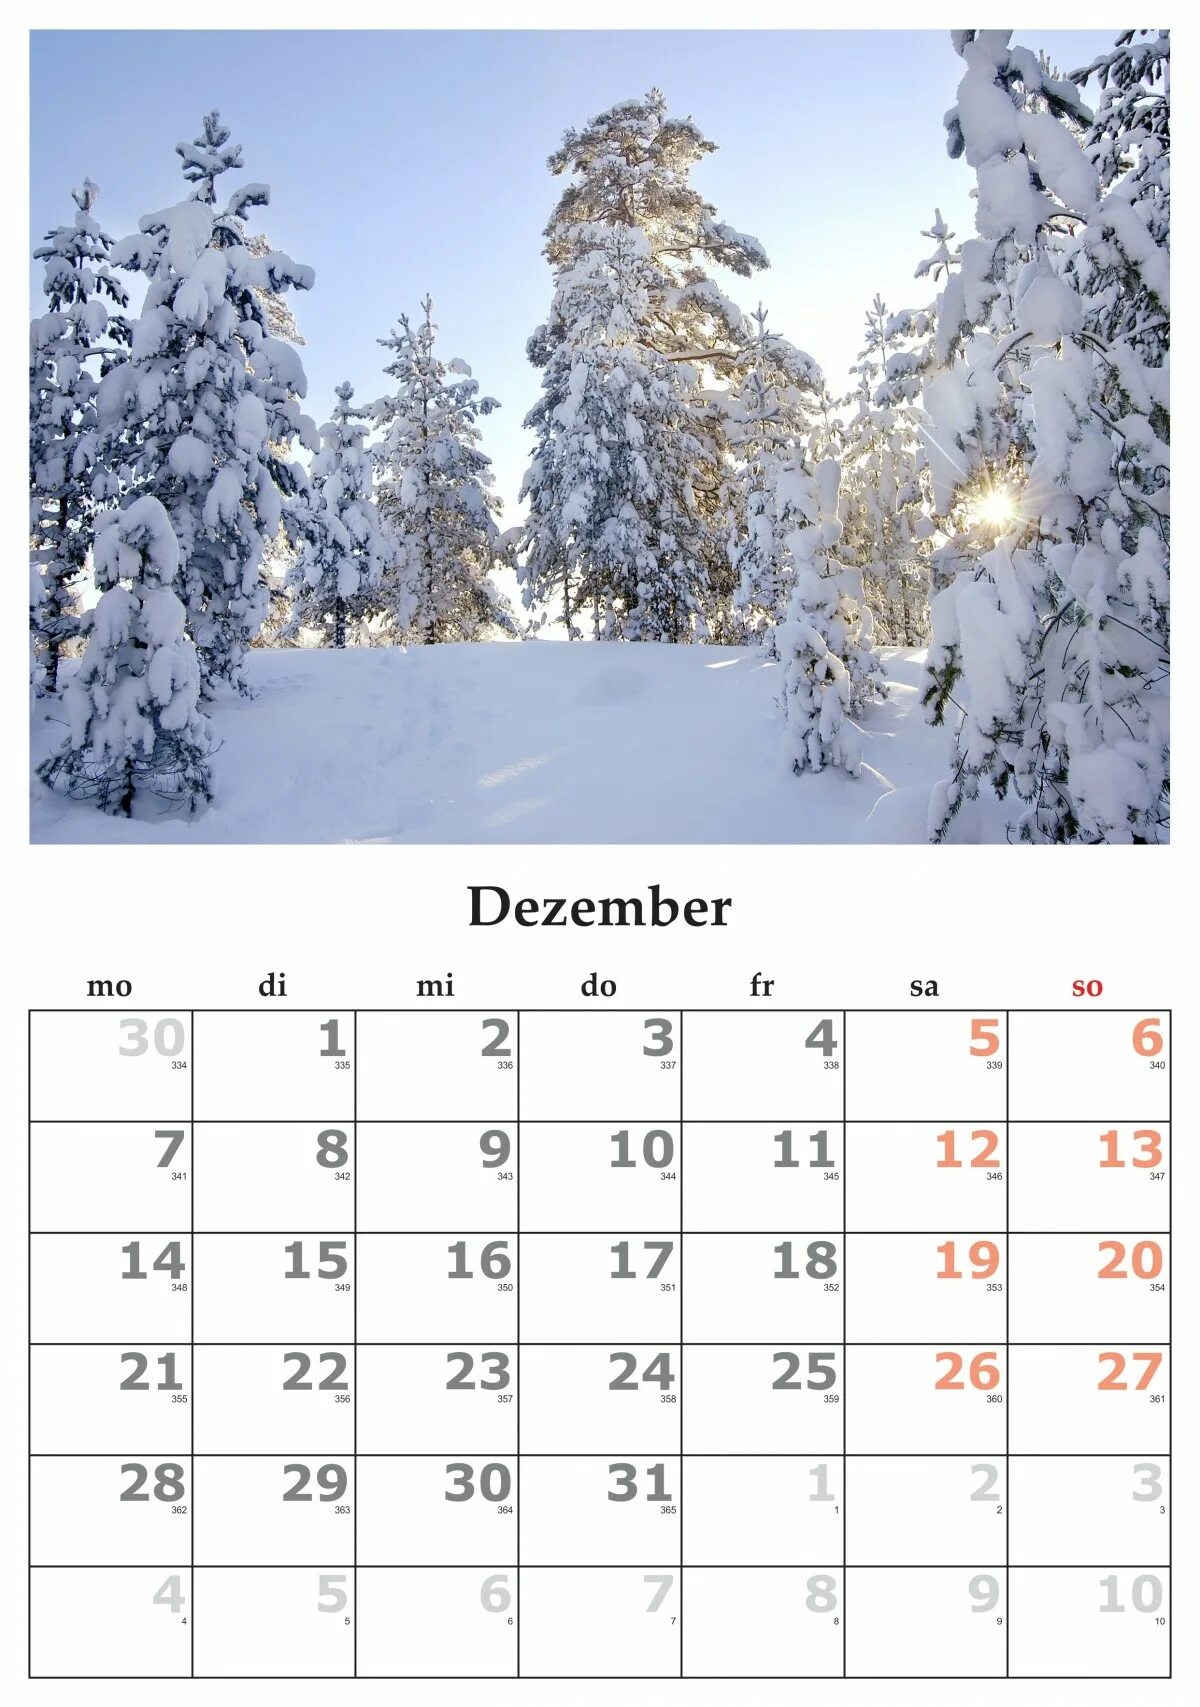 Календарь декабрь. Календарь на декабрь месяц. Календарик на декабрь. Календарь зима. 2 декабря 2015 год